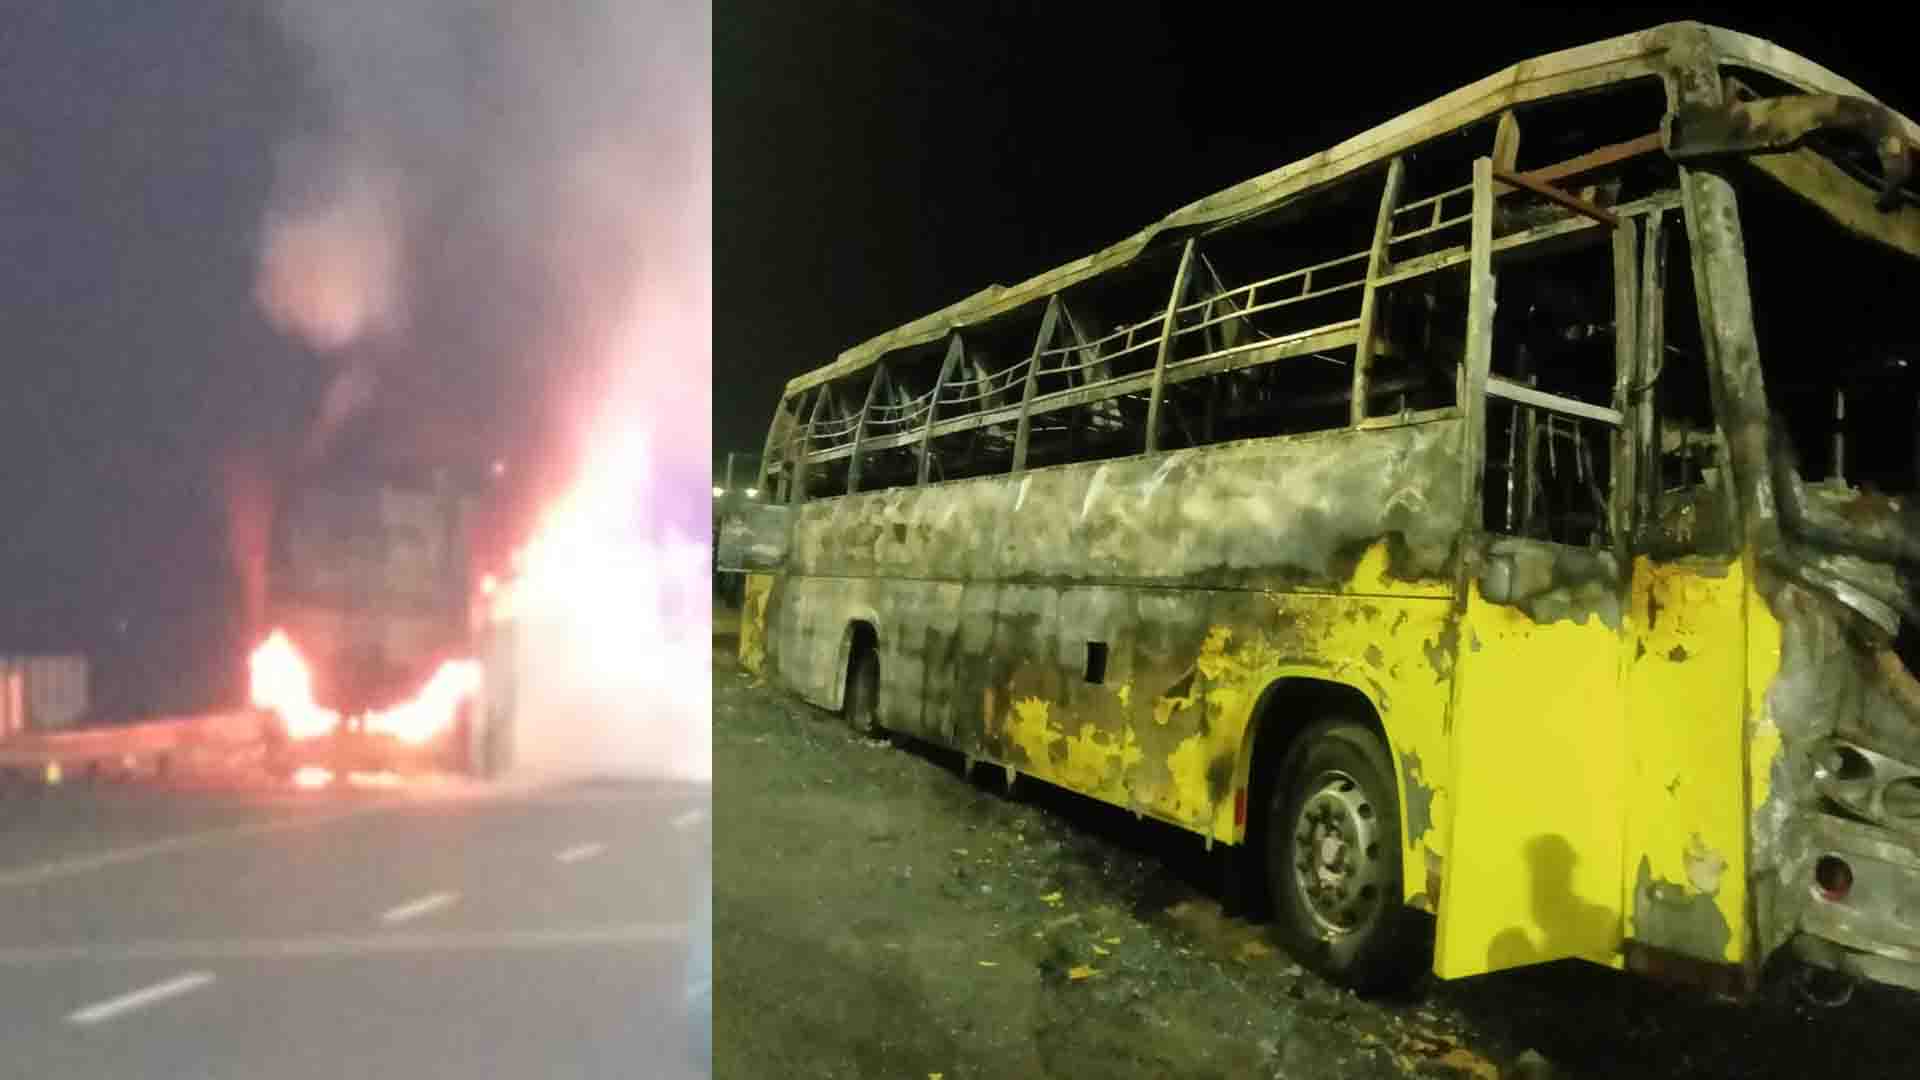  चलती बस में अचानक लगी आग, करीब 40 यात्री थे सवार 